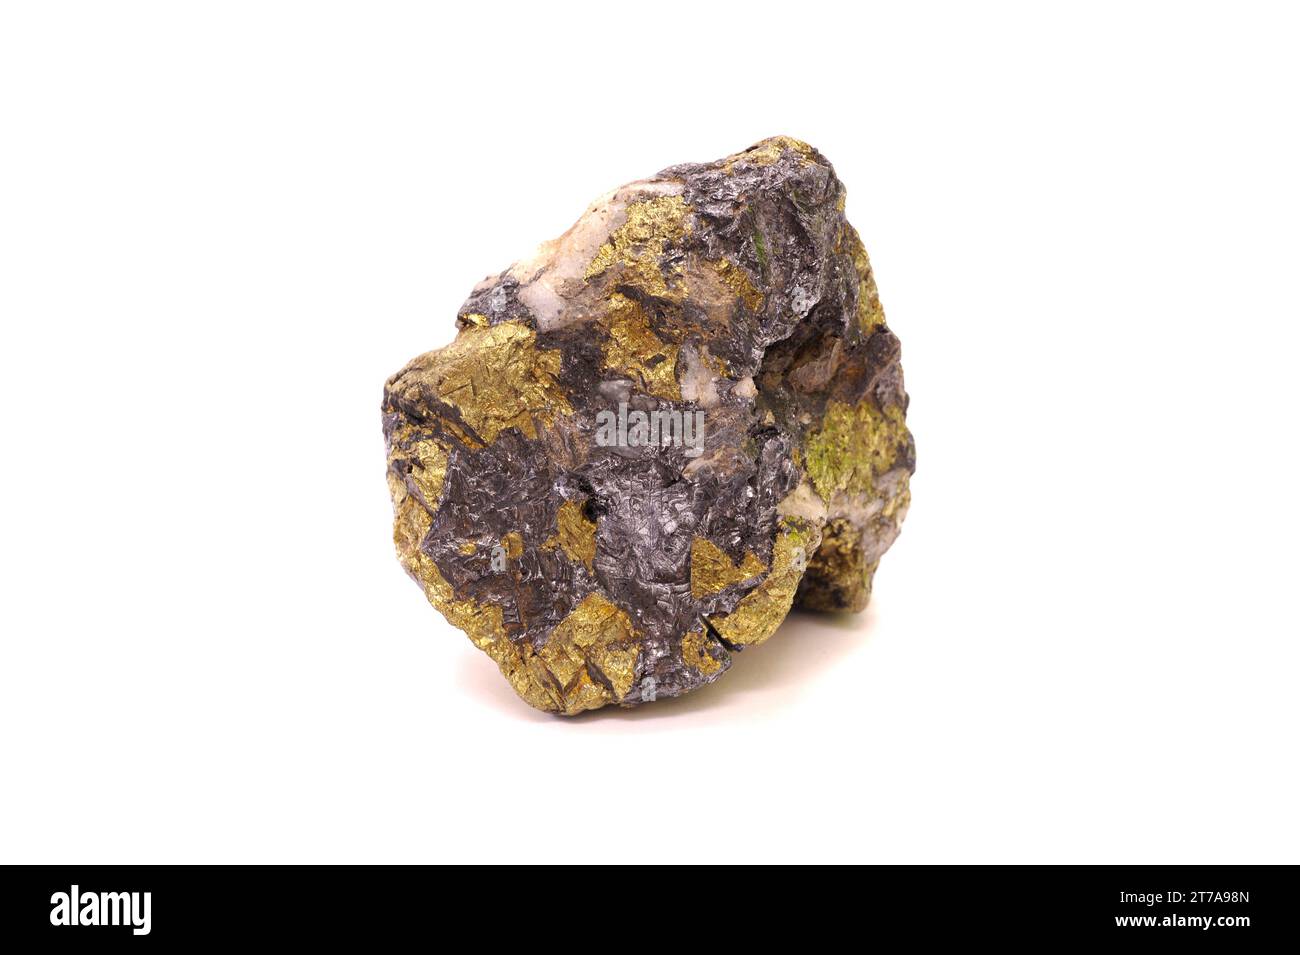 Galena (gris) y calcompirita (dorado). Galena o lead glance es un sulfuro de plomo. Chalcopyrite es un sulfuro de cobre de hierro. Muestra. Foto de stock